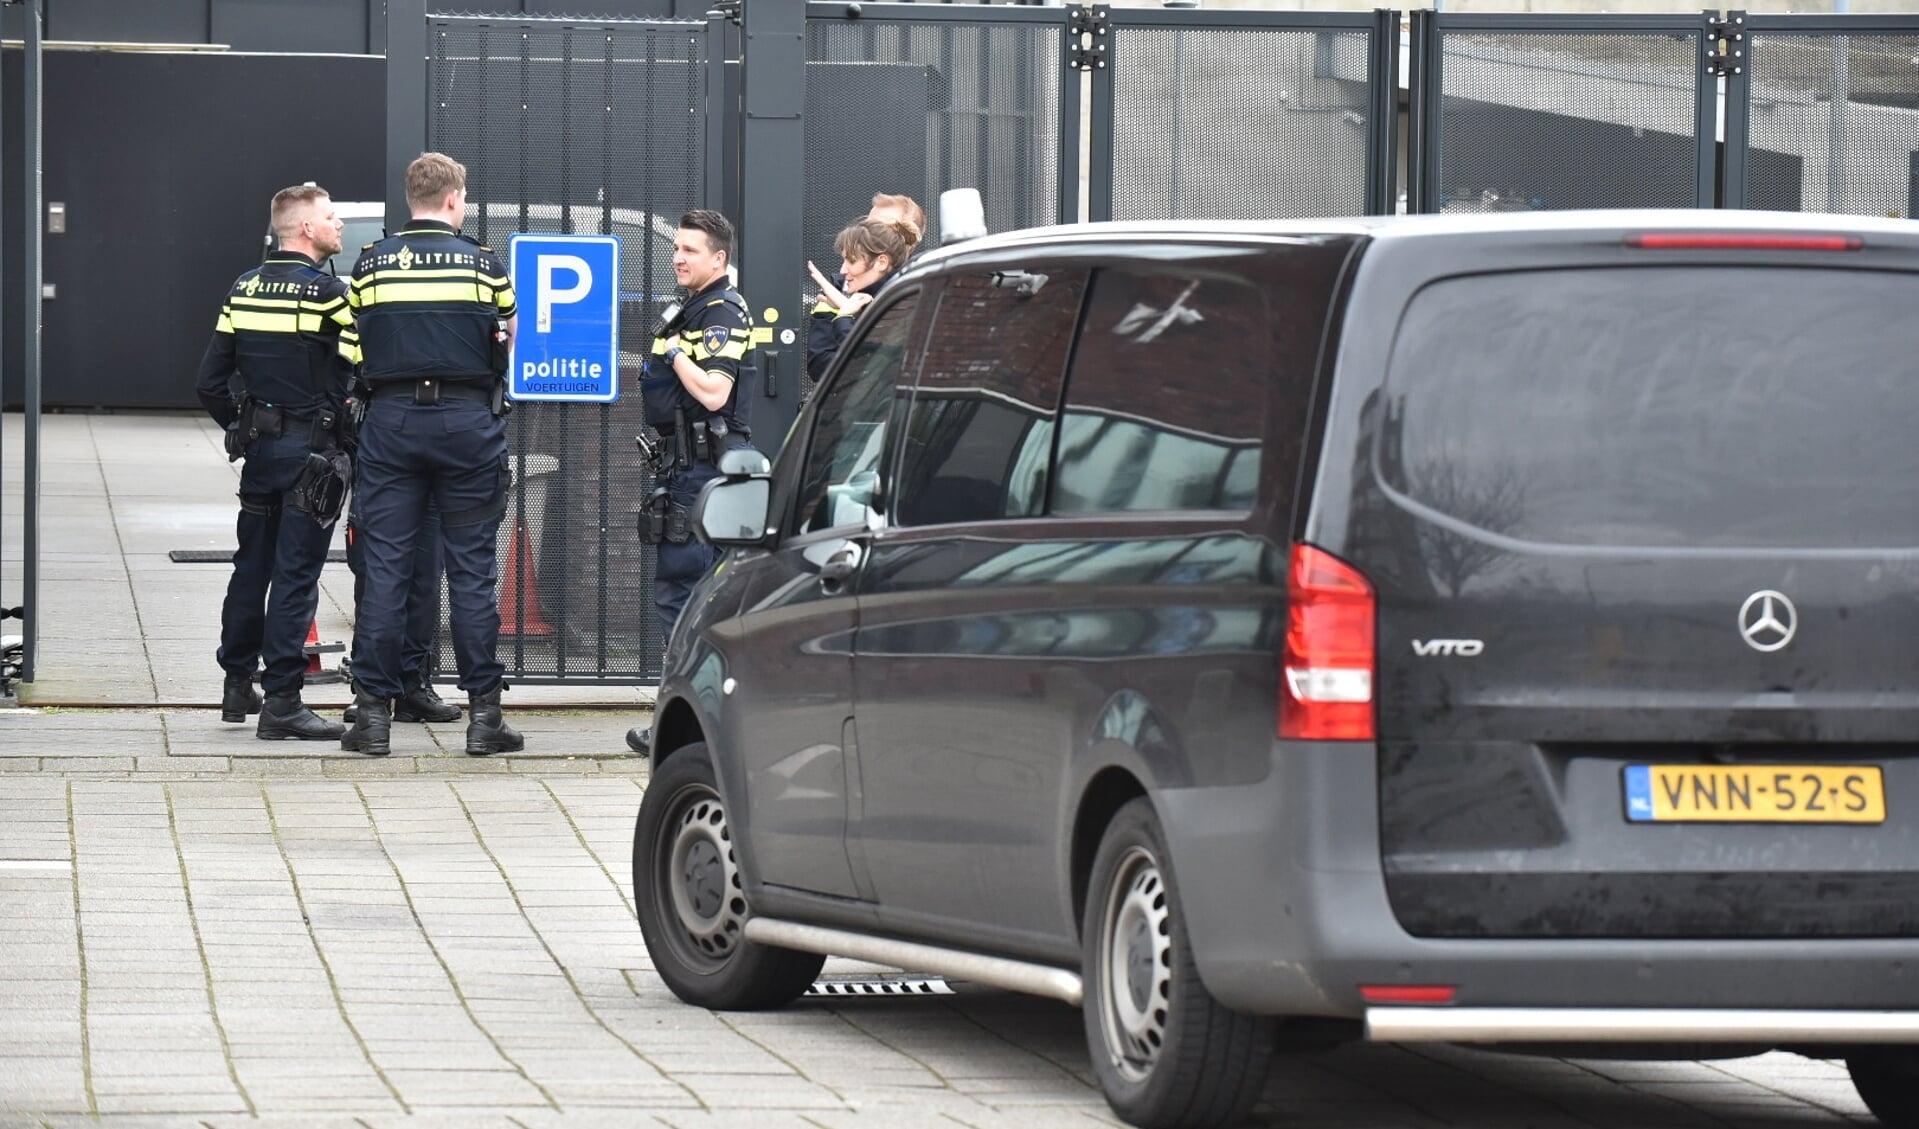 Het politiebureau werd na het bezorgen van de explosieven ontruimd en de politieagenten wachtten het verloop van het onderzoek buiten af (foto: Bob van Keulen).